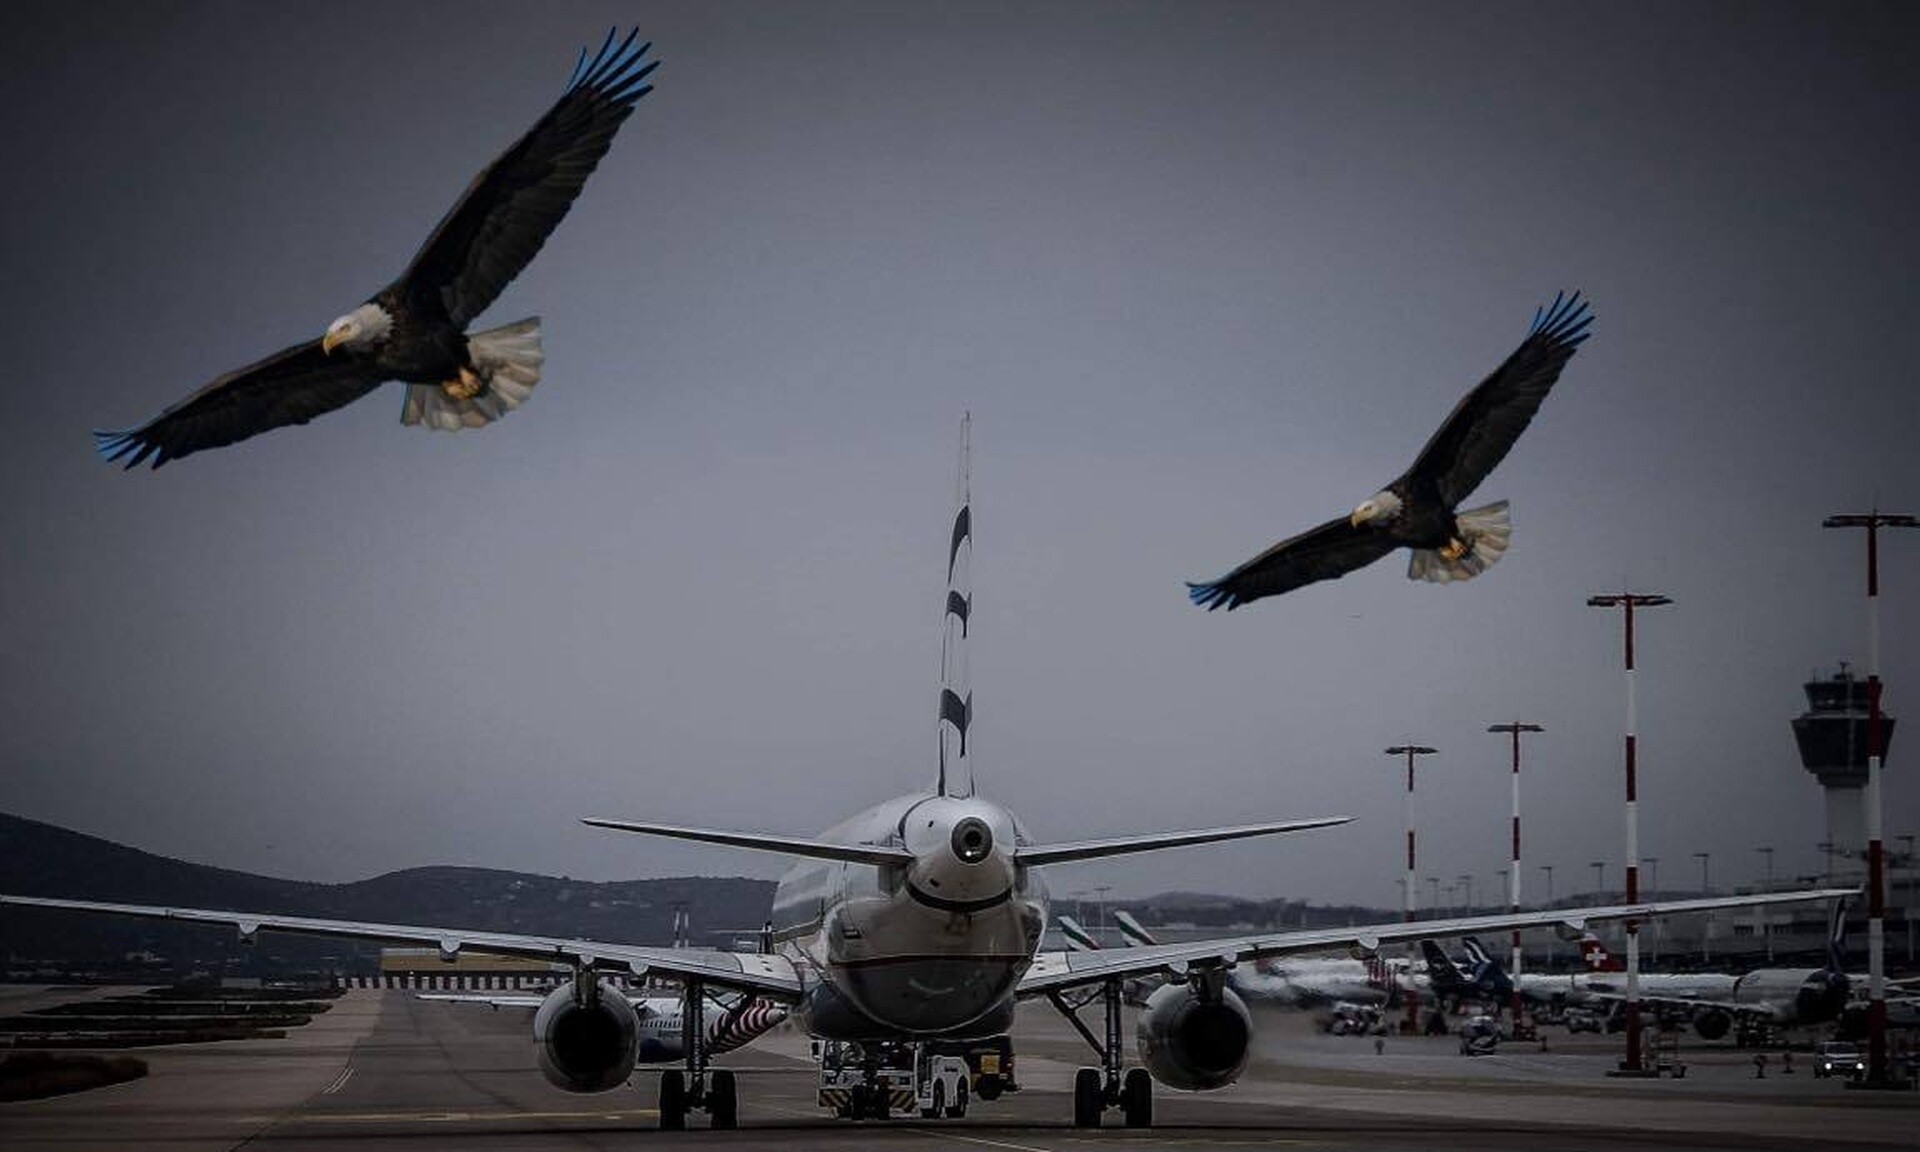 Κίνδυνος-θάνατος τα πουλιά για την ασφάλεια των πτήσεων – Πώς ένα άγριο πτηνό δίνει τη… λύση Ειδήσεις